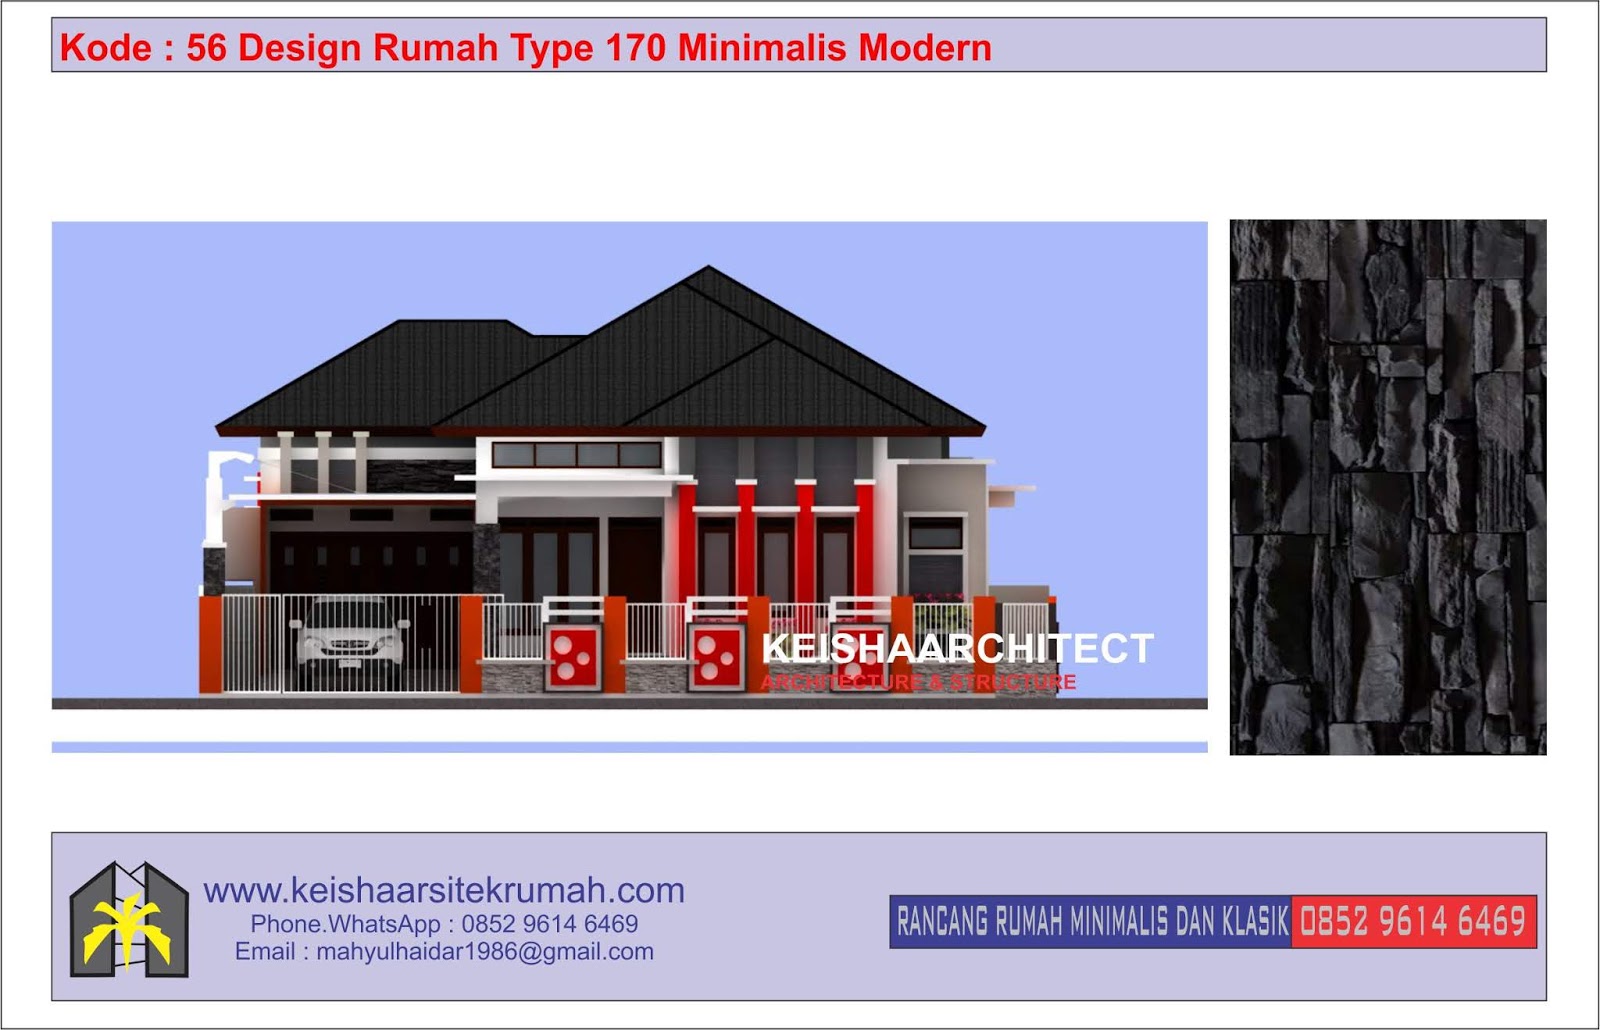 Kode 56 Design Rumah Type 170 Minimalis Lokasi Ulee Kareng